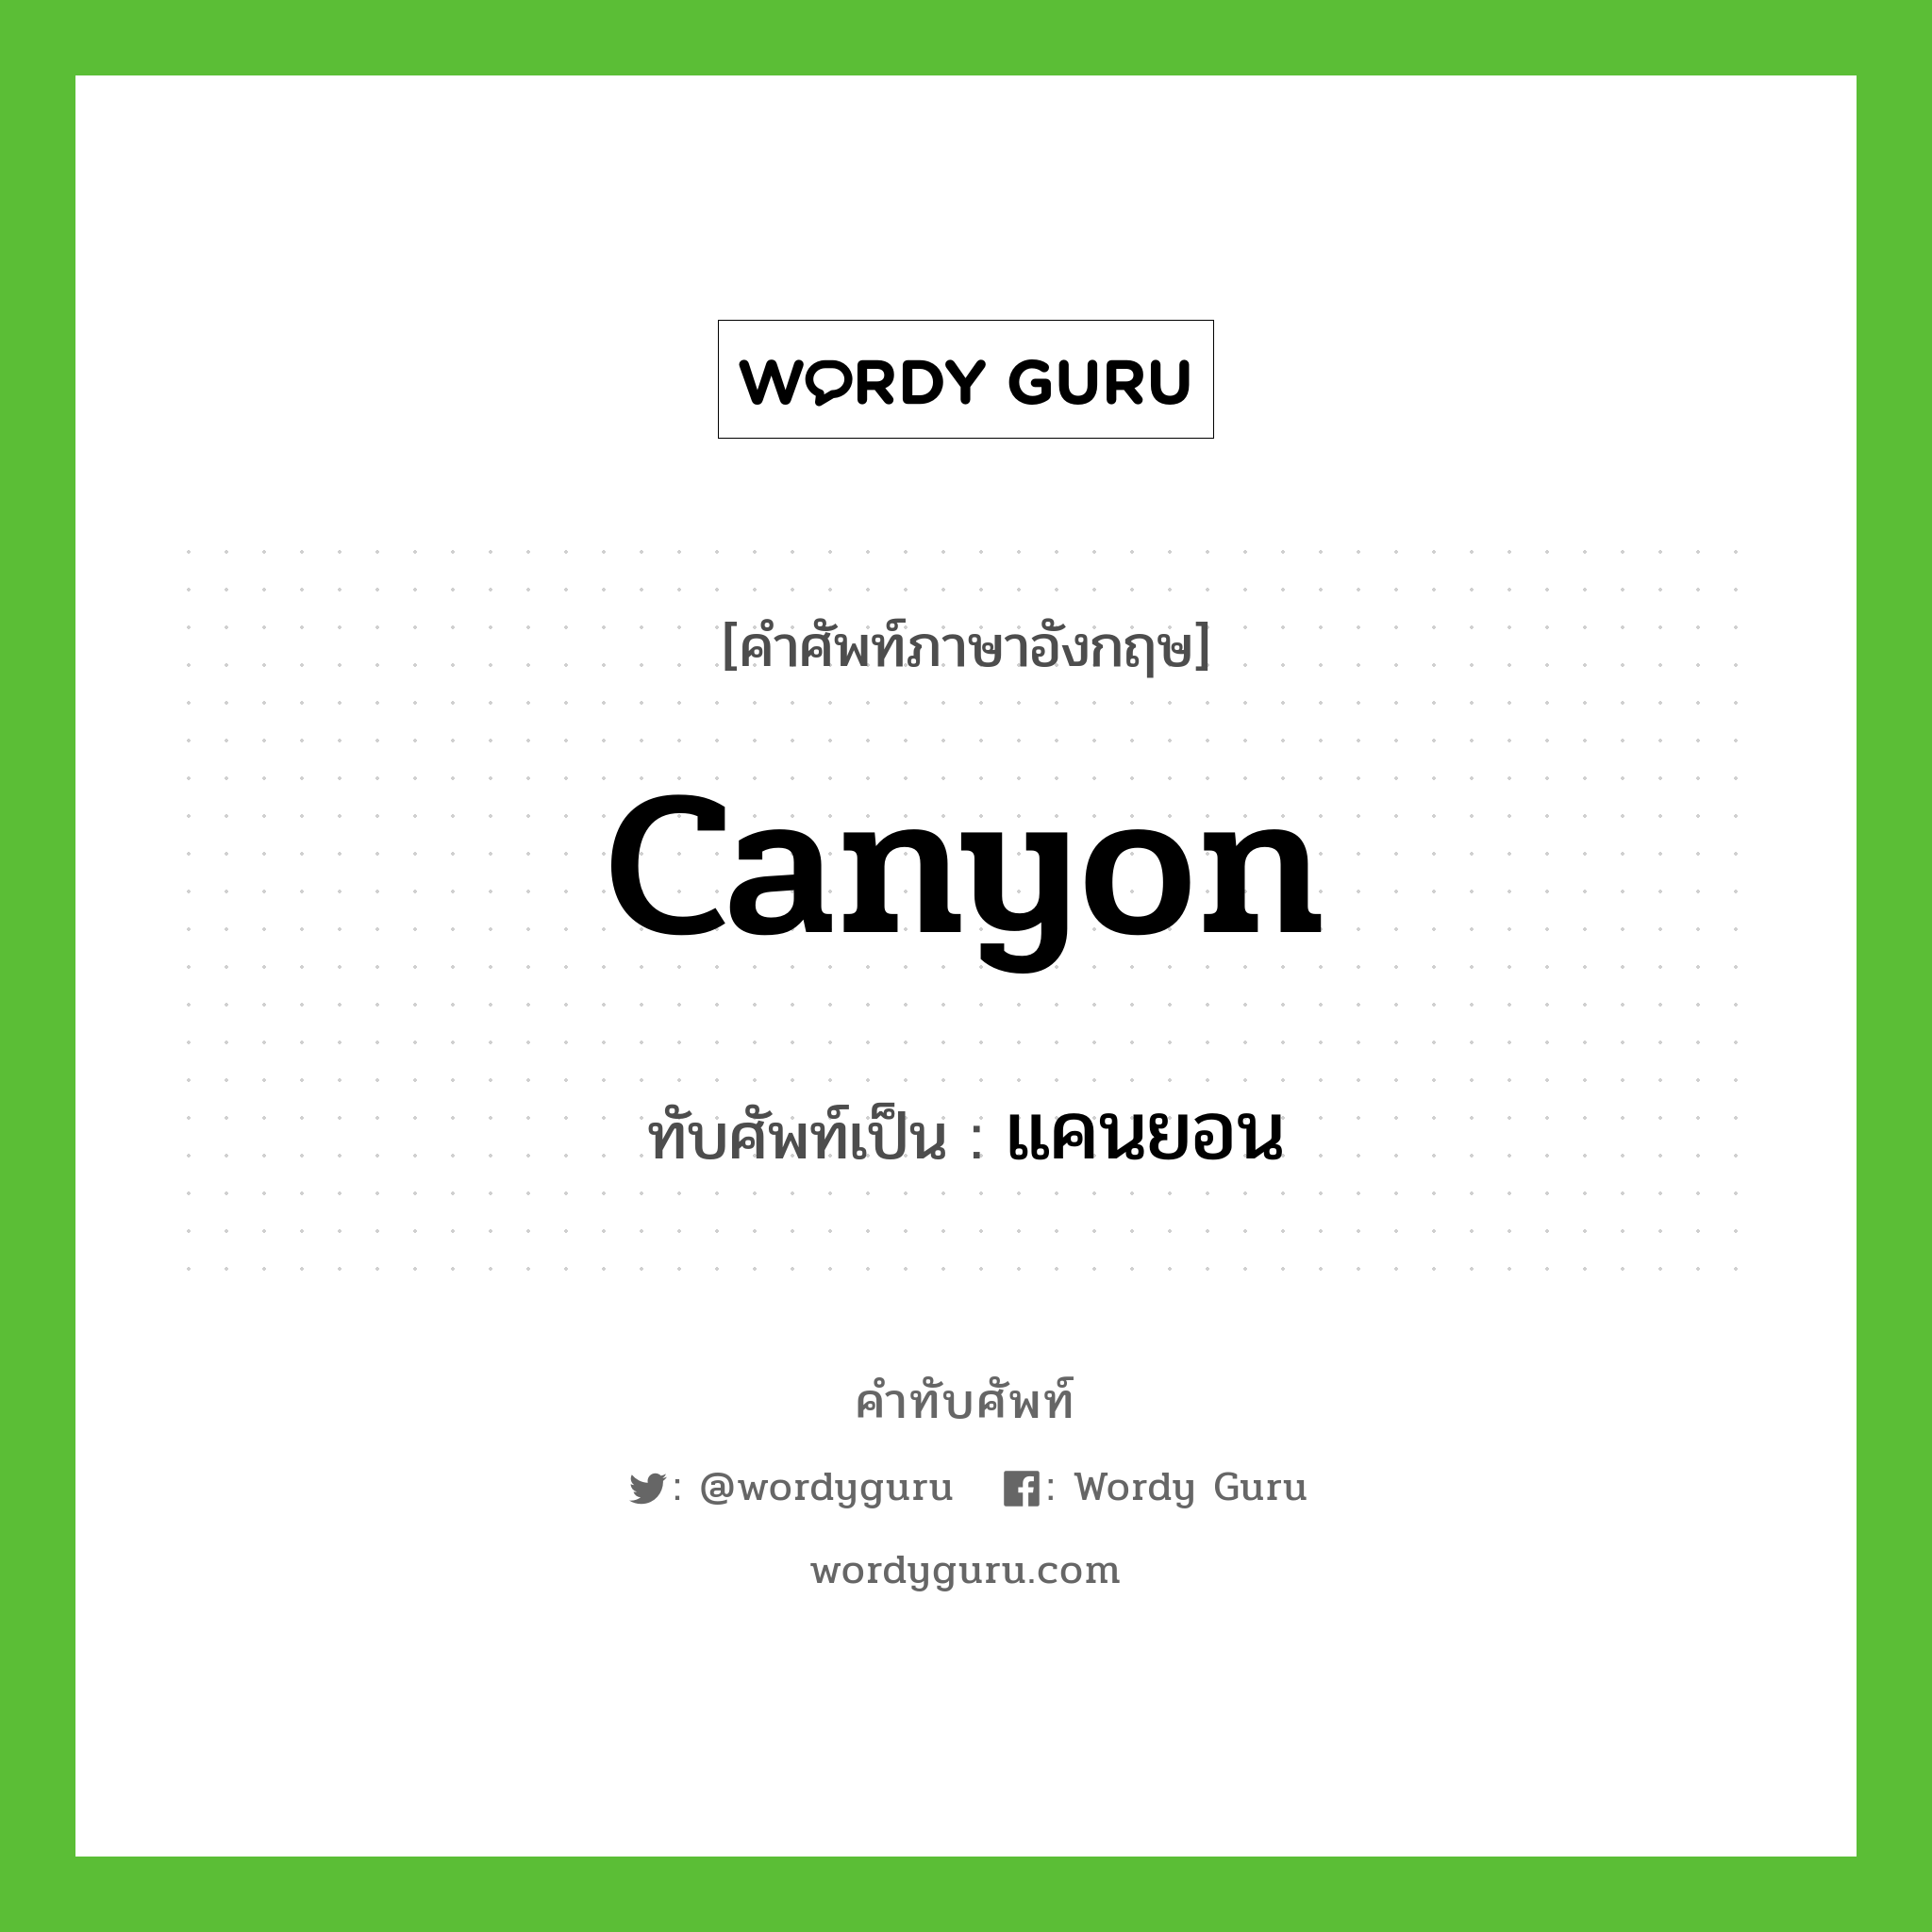 canyon เขียนเป็นคำไทยว่าอะไร?, คำศัพท์ภาษาอังกฤษ canyon ทับศัพท์เป็น แคนยอน